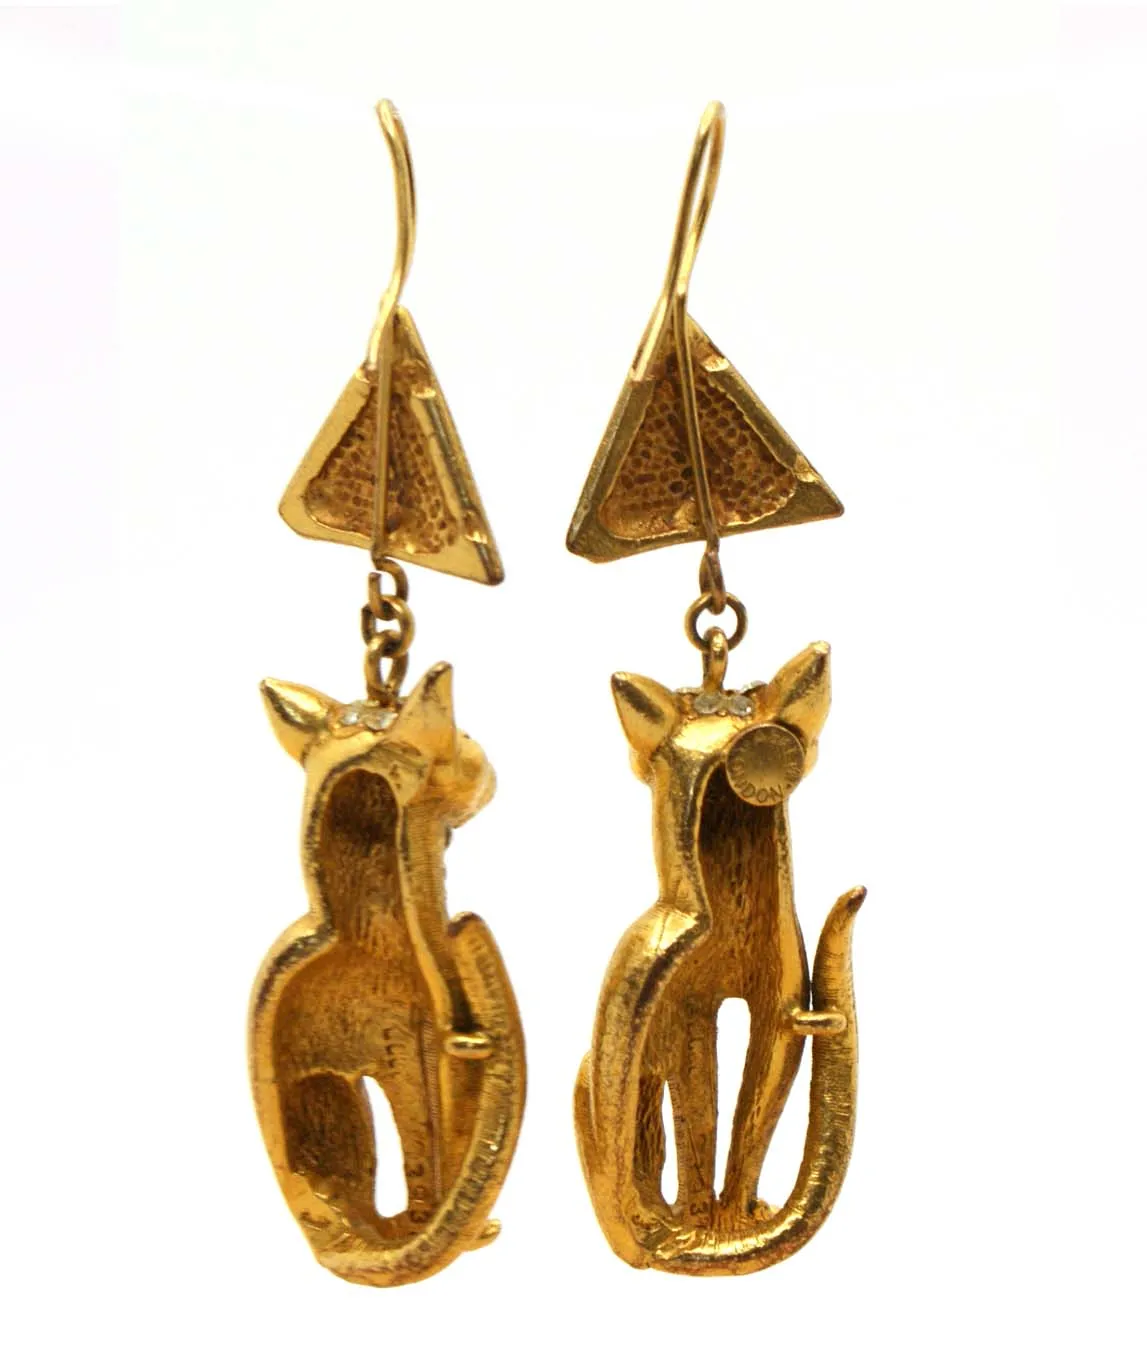 Askew London gold plated Bastet cat earrings for pierced ears reverse view